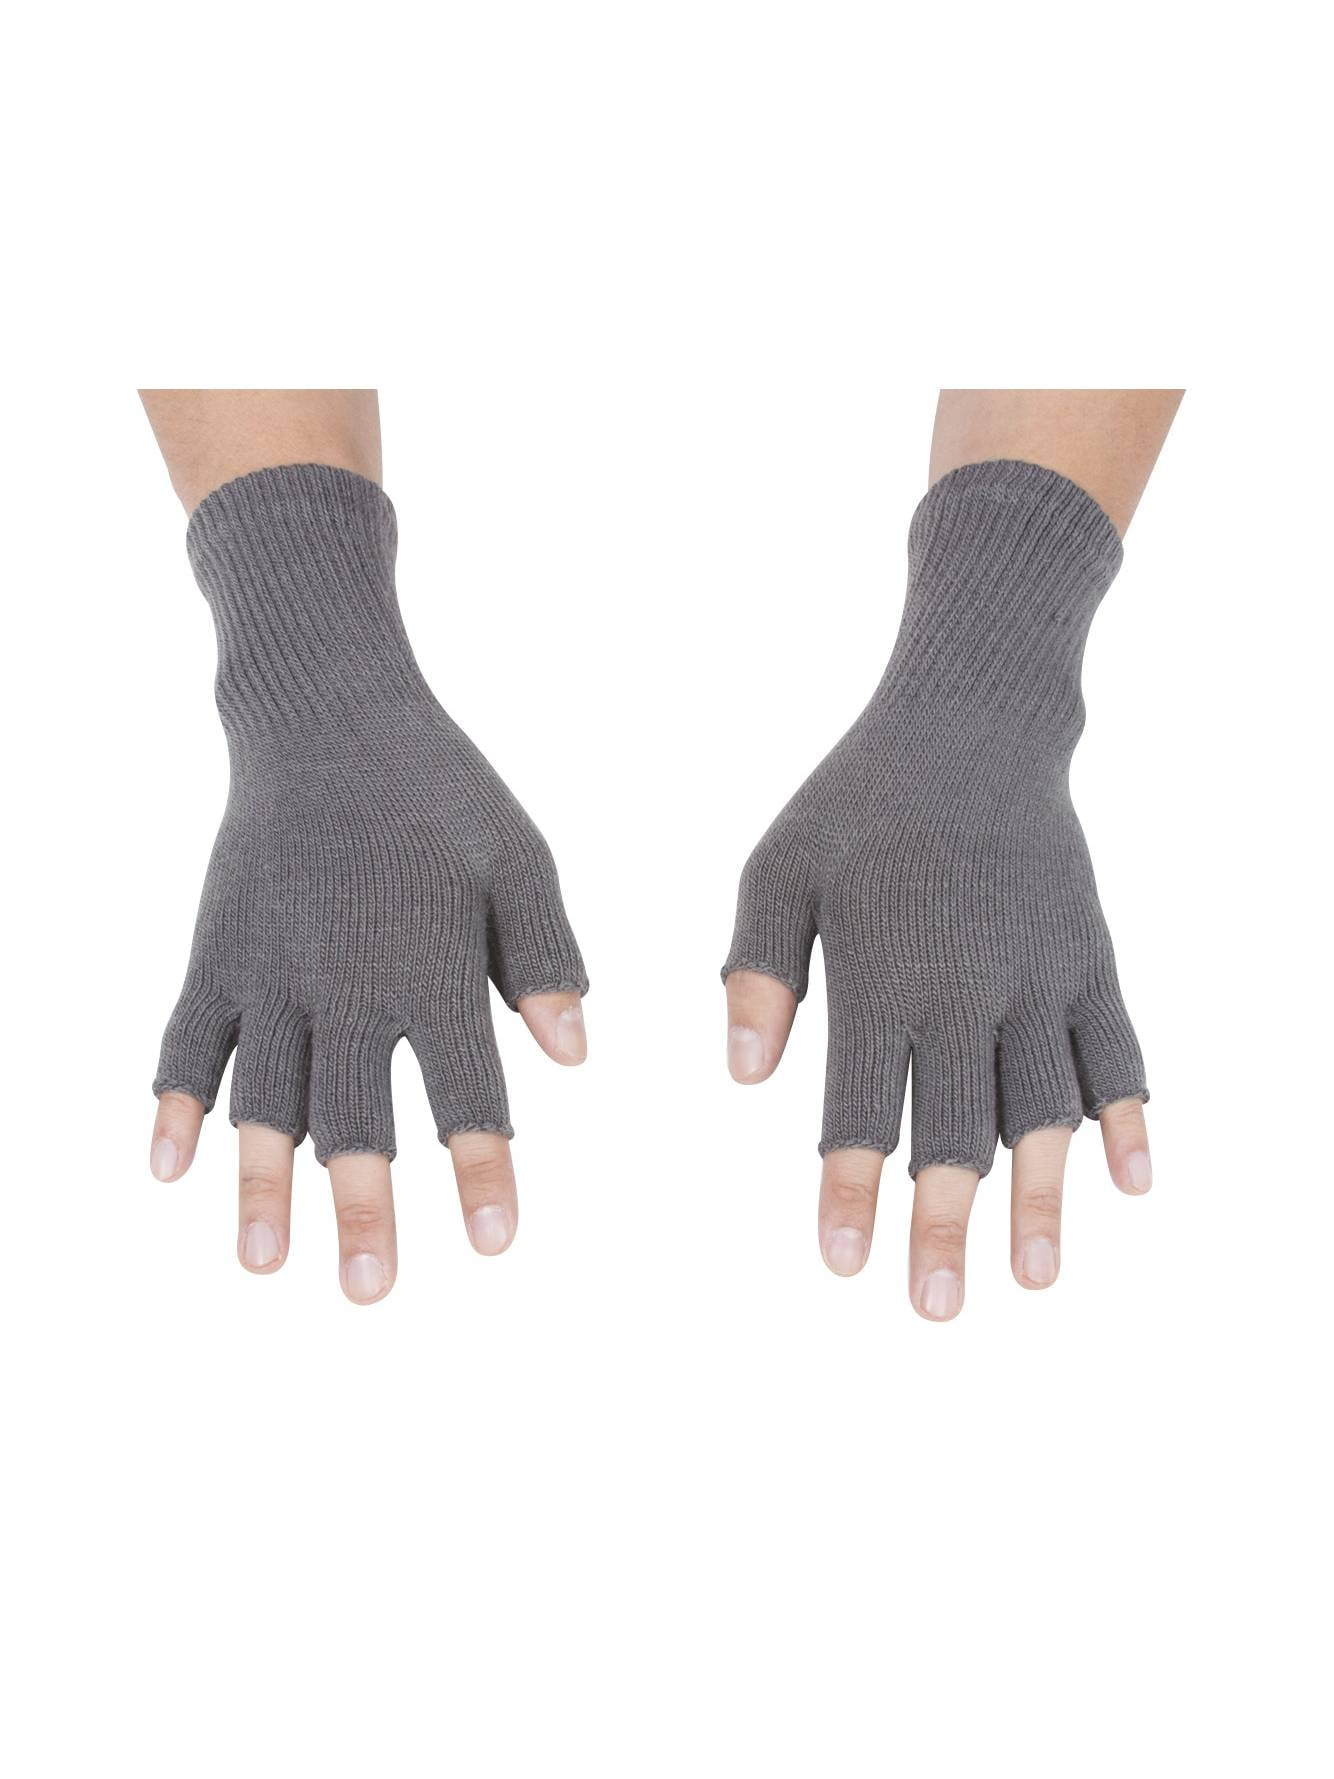 Winter Gloves Warm Wool Mittens Unisex Warm Half Finger Stretchy Knit Gloves 